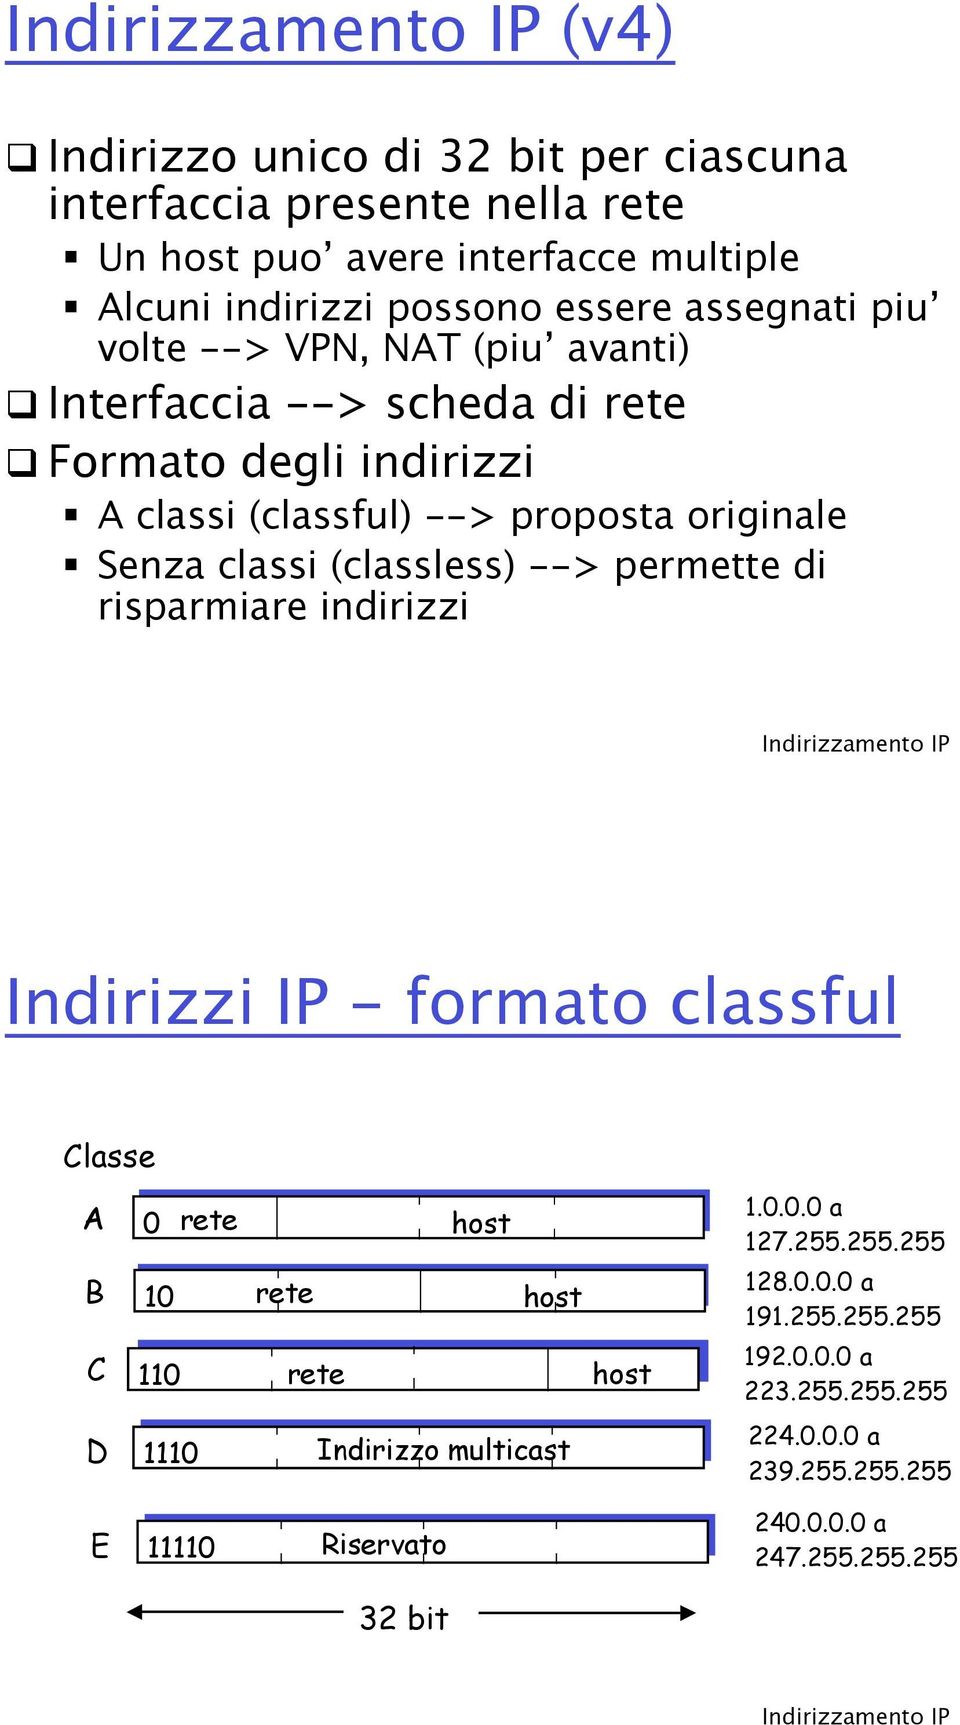 Formato degli indirizzi " A classi (classful) --> proposta originale " Senza classi (classless) --> permette di risparmiare indirizzi Indirizzi IP - formato